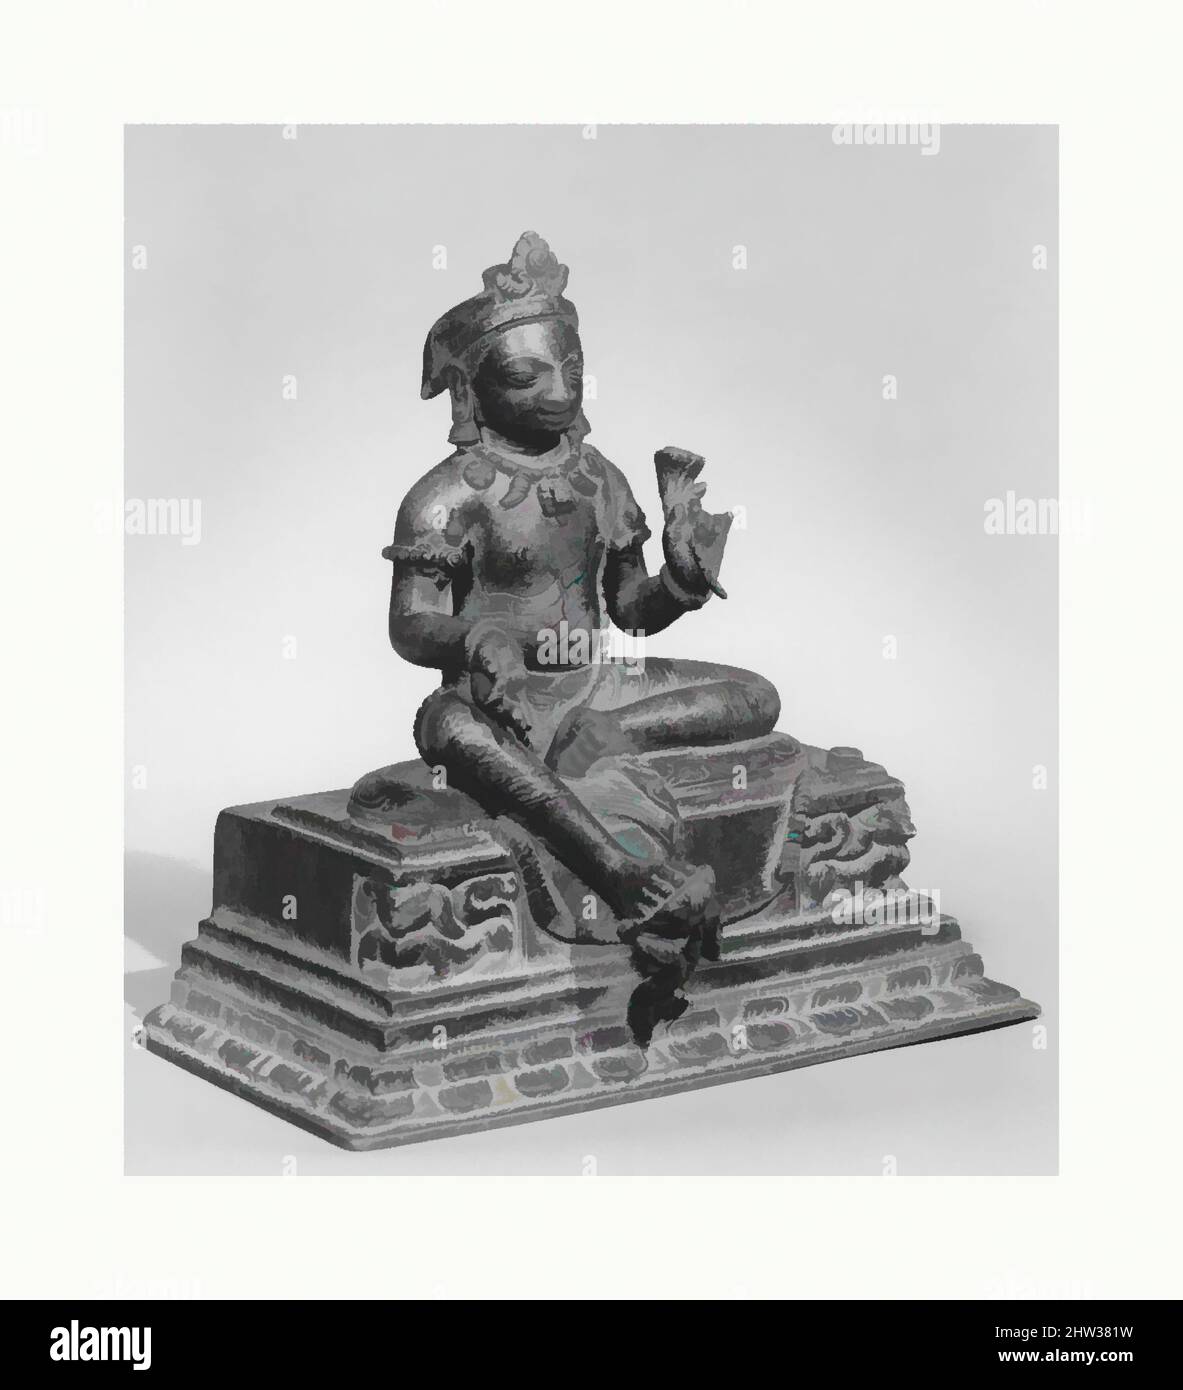 Arte ispirata da Manjushri, la Bodhisattva della saggezza trascendente, periodo Licchavi-Thakuri, 10th secolo, Nepal (valle di Kathmandu), lega di rame, H. 6 9/16 poll. (16,7 cm), lavorazione del metallo, Manjushri, un bodhisattva che incarna la saggezza come il percorso verso l'illuminazione, è strettamente legato alle, opere classiche modernizzate da Artotop con un tuffo di modernità. Forme, colore e valore, impatto visivo accattivante sulle emozioni artistiche attraverso la libertà delle opere d'arte in modo contemporaneo. Un messaggio senza tempo che persegue una nuova direzione selvaggiamente creativa. Artisti che si rivolgono al supporto digitale e creano l'NFT Artotop Foto Stock